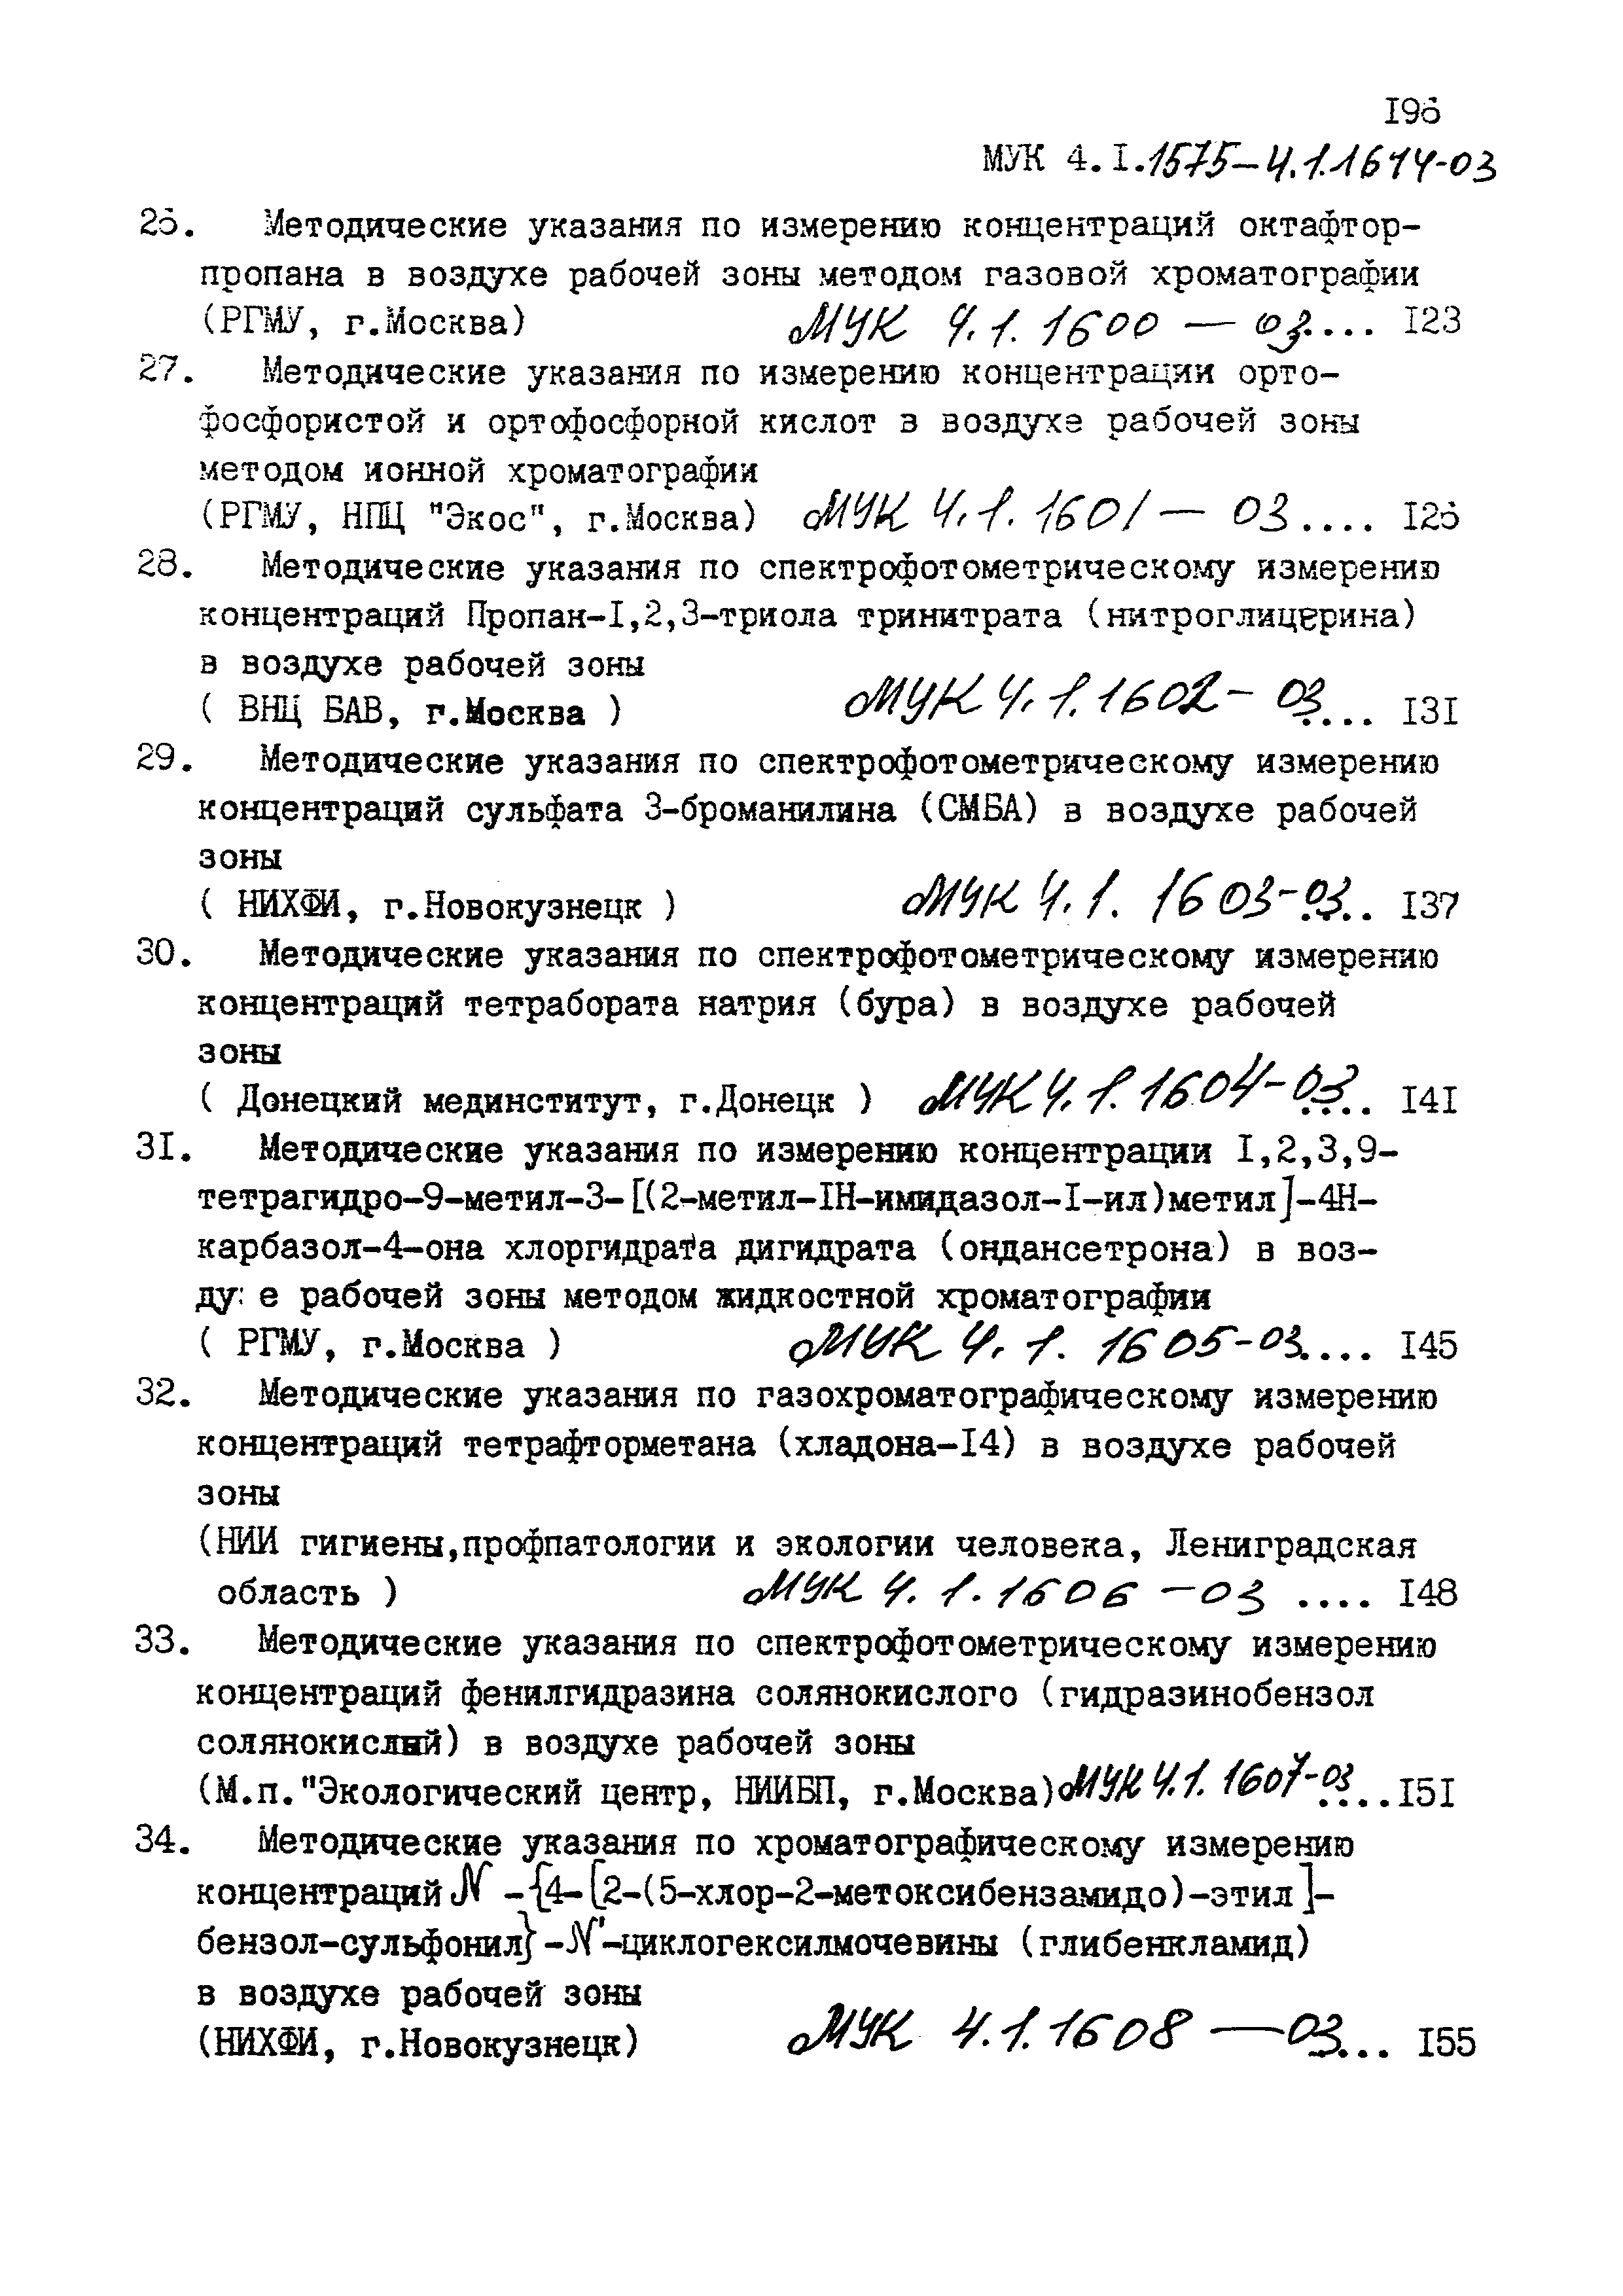 МУК 4.1.1600-03